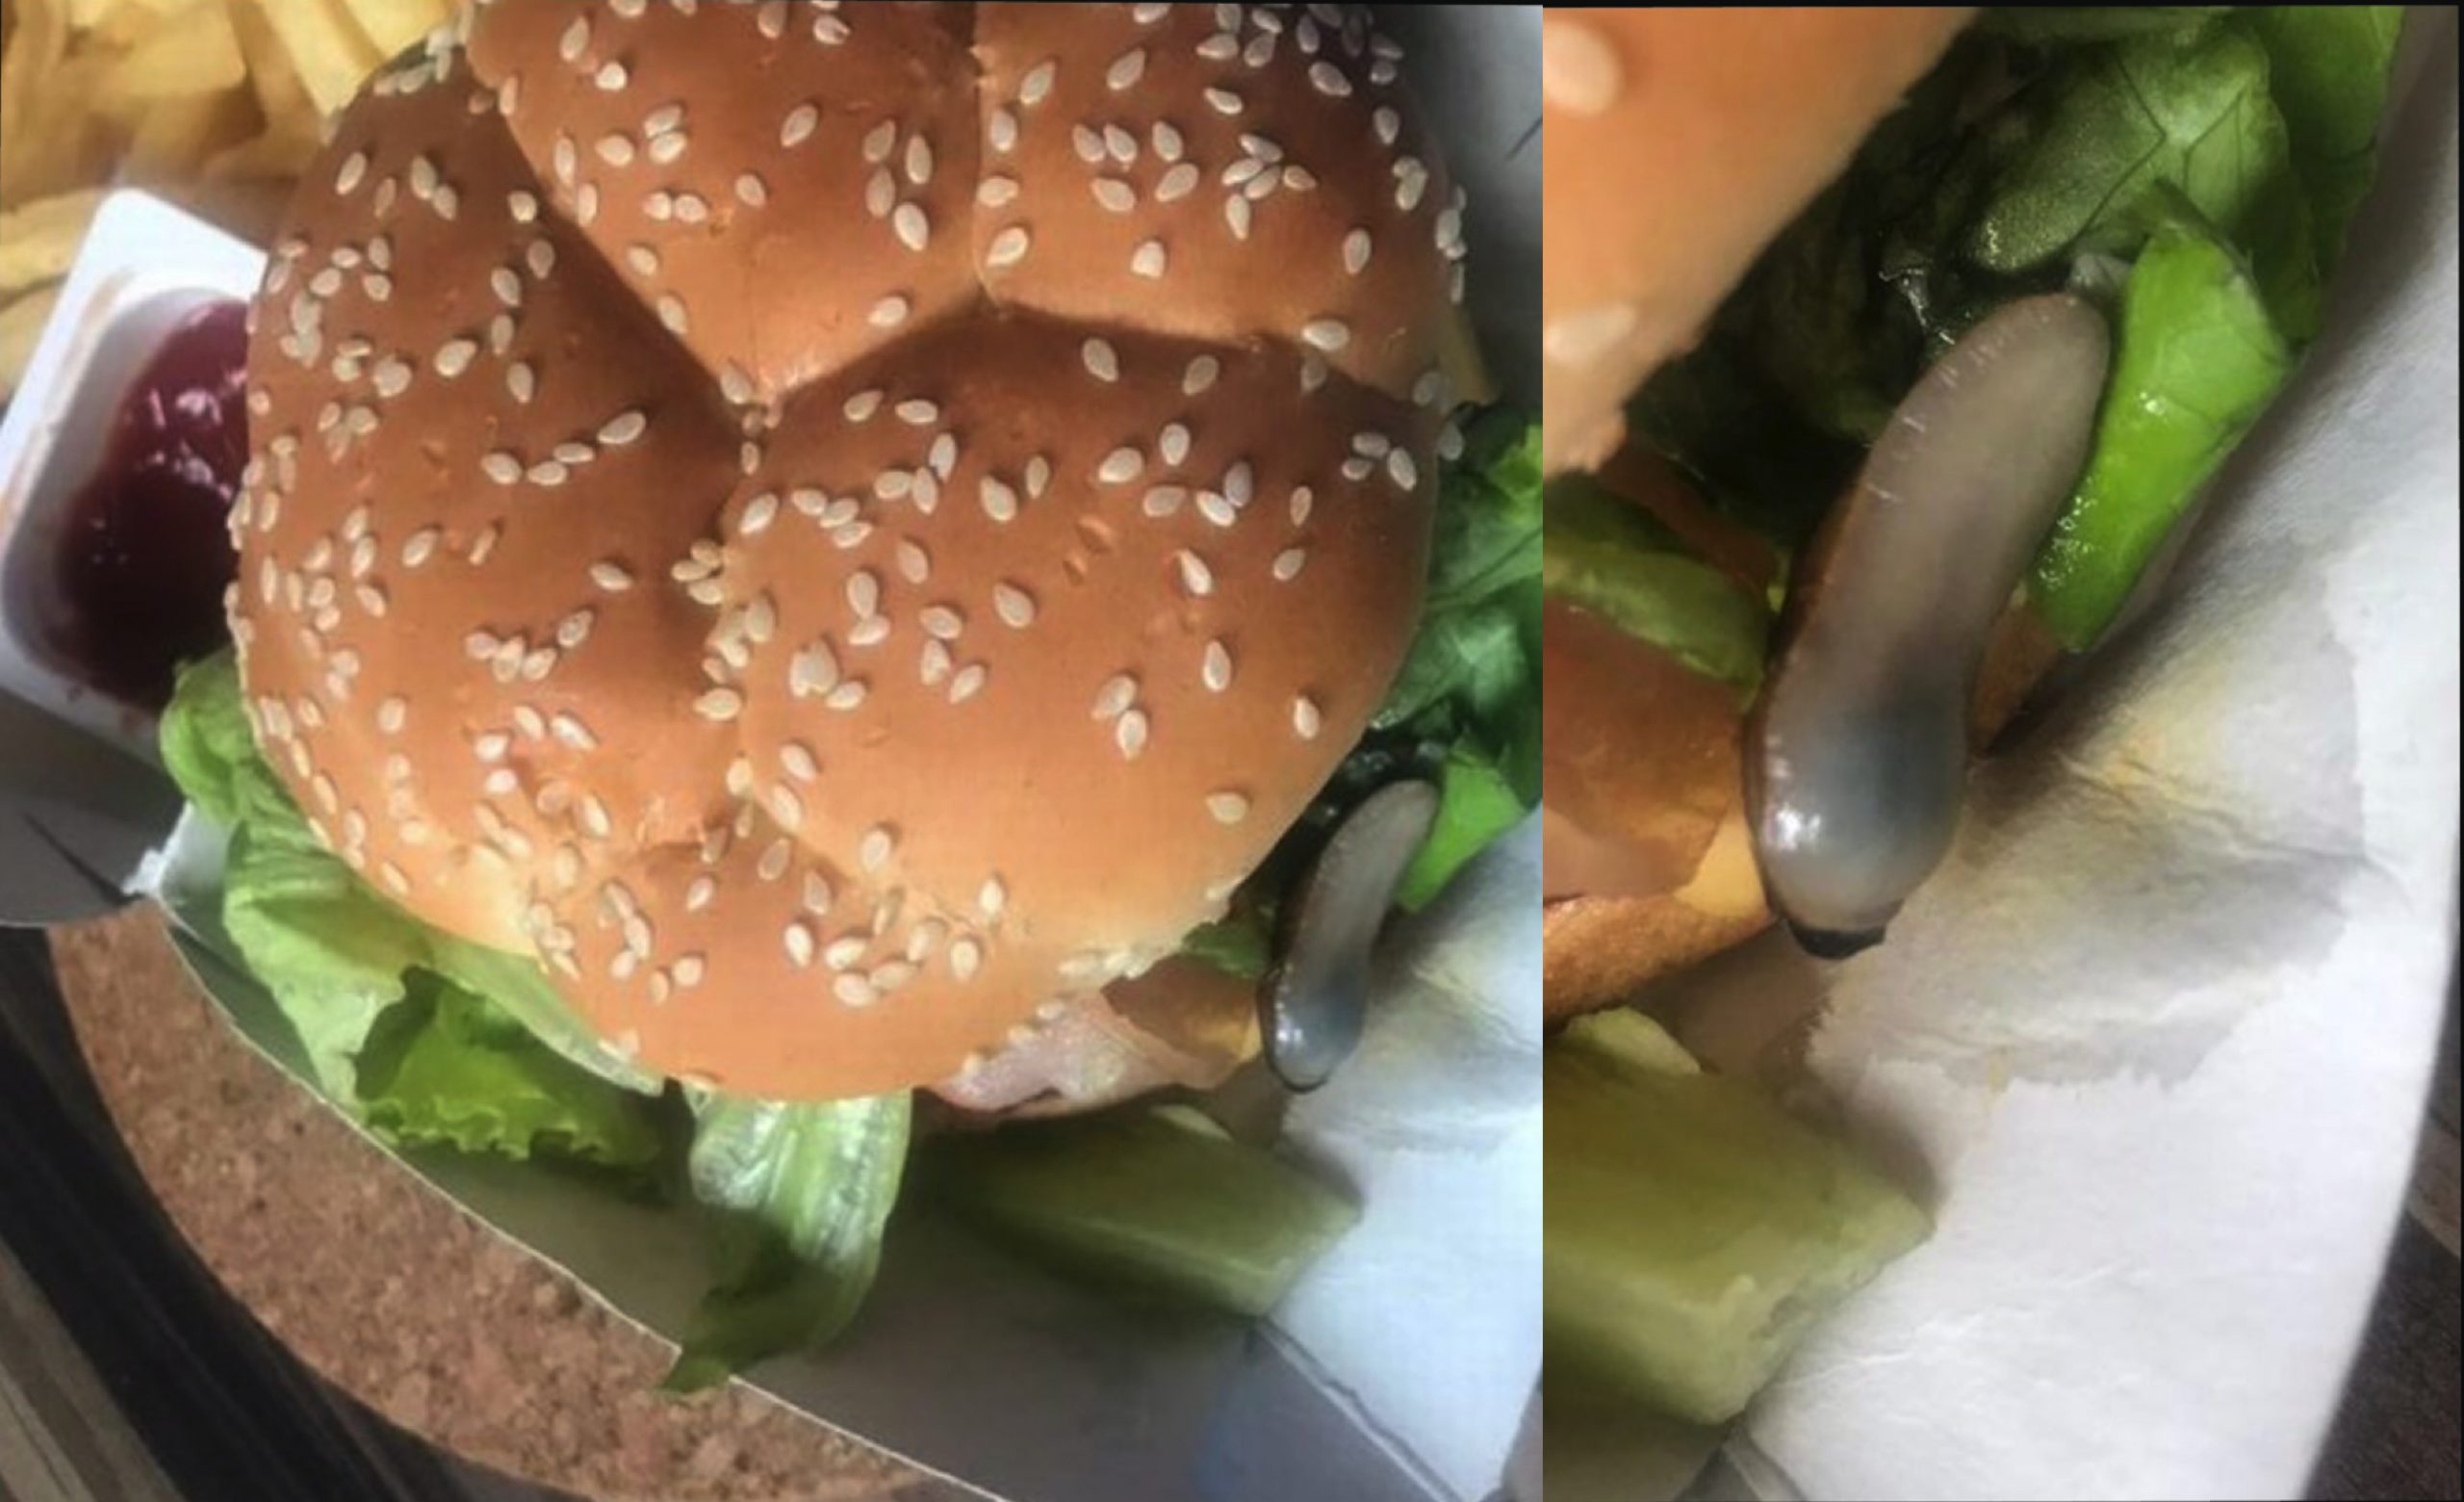 ‘Tapau’ Burger Di Restoran Makanan Segera Terkenal, Pelanggan Terkejut Jumpa Lintah Dalam Isi Burger